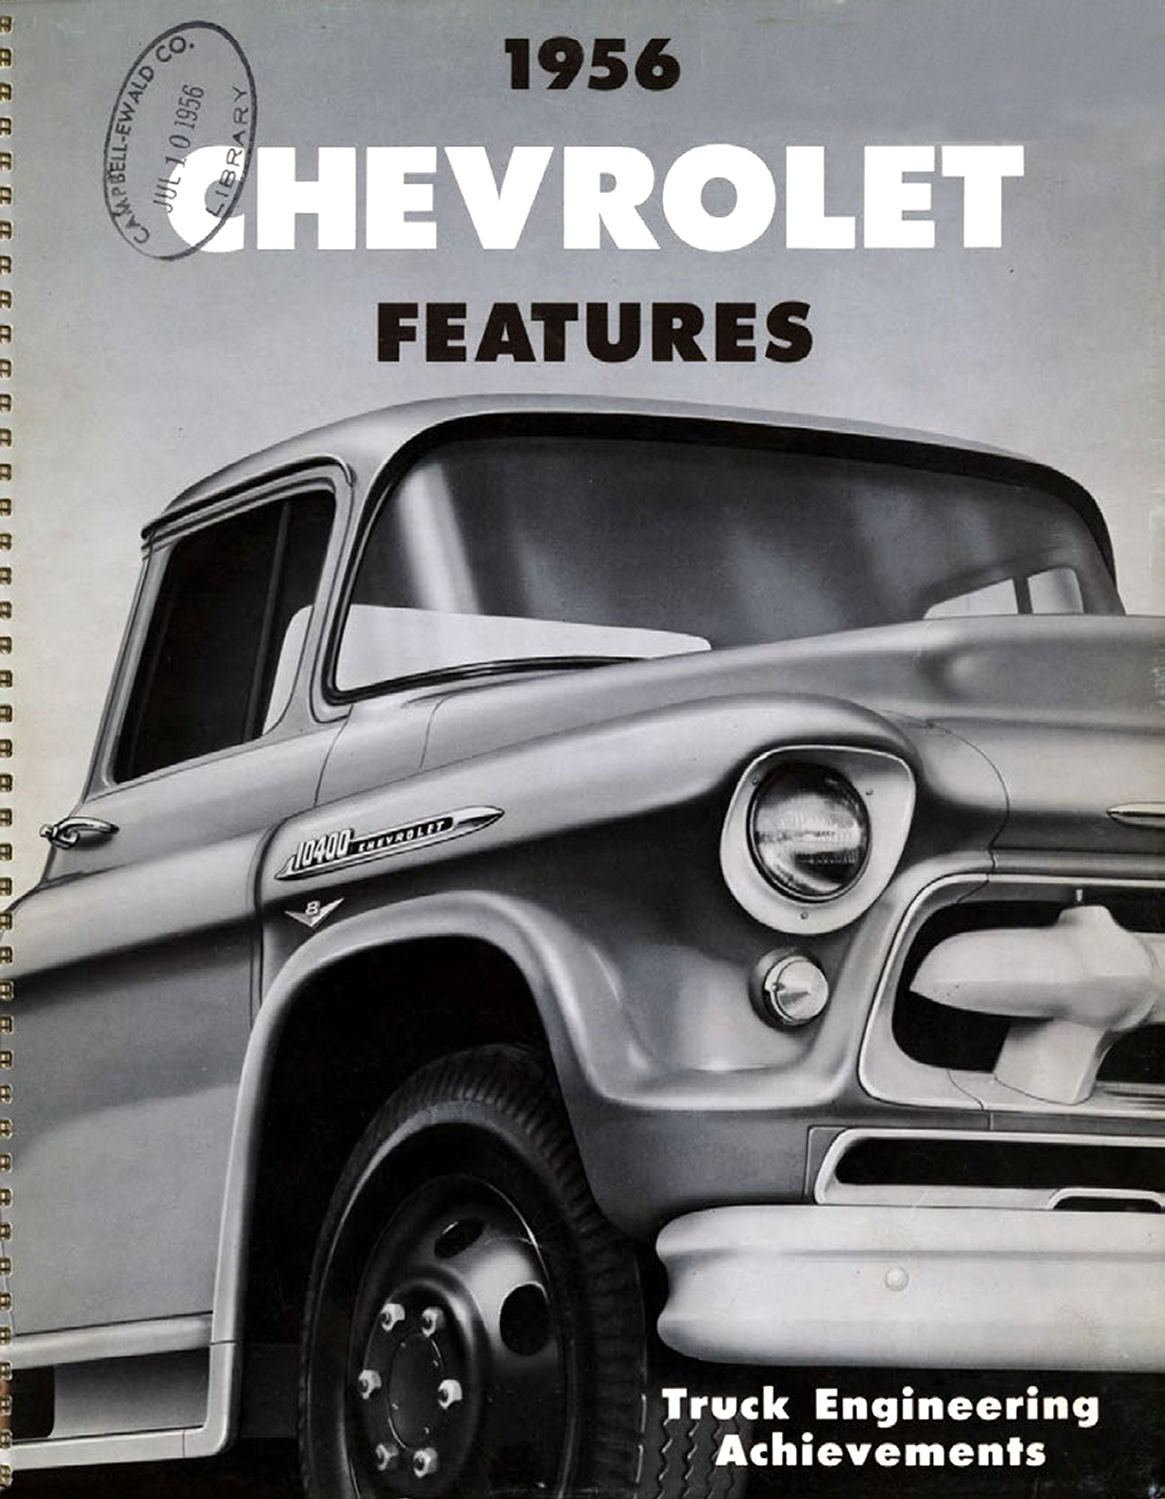 1956_Chevrolet_Truck_Engineering_Features-00